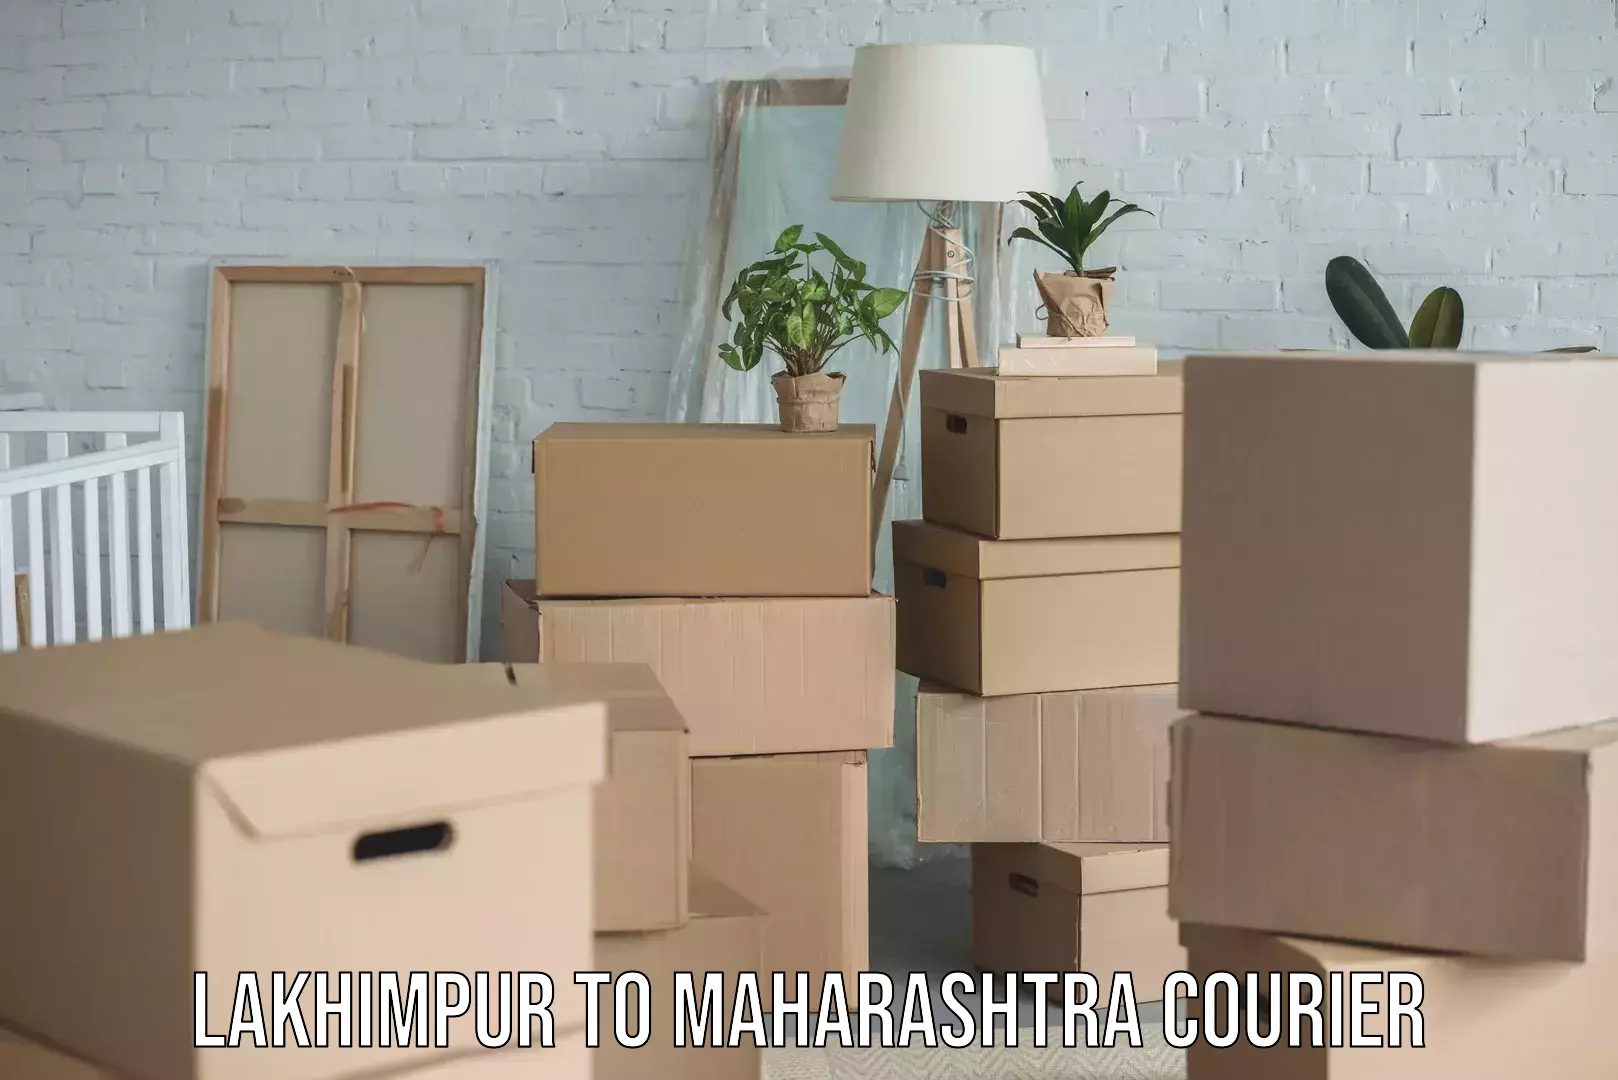 Home relocation experts Lakhimpur to Maharashtra